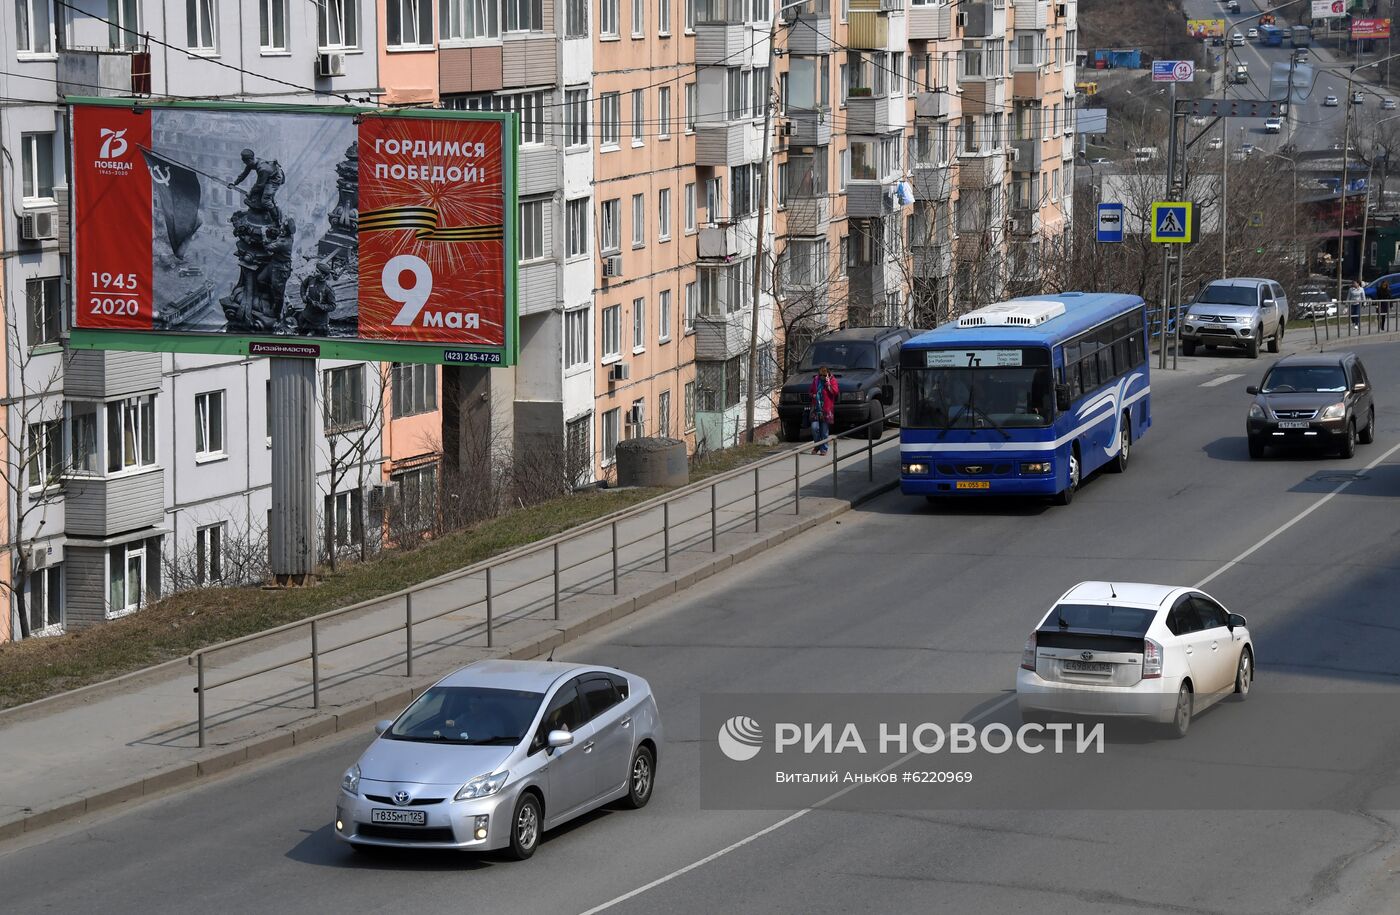 Баннеры, посвященные 75-летию Победы, на улицах Владивостока